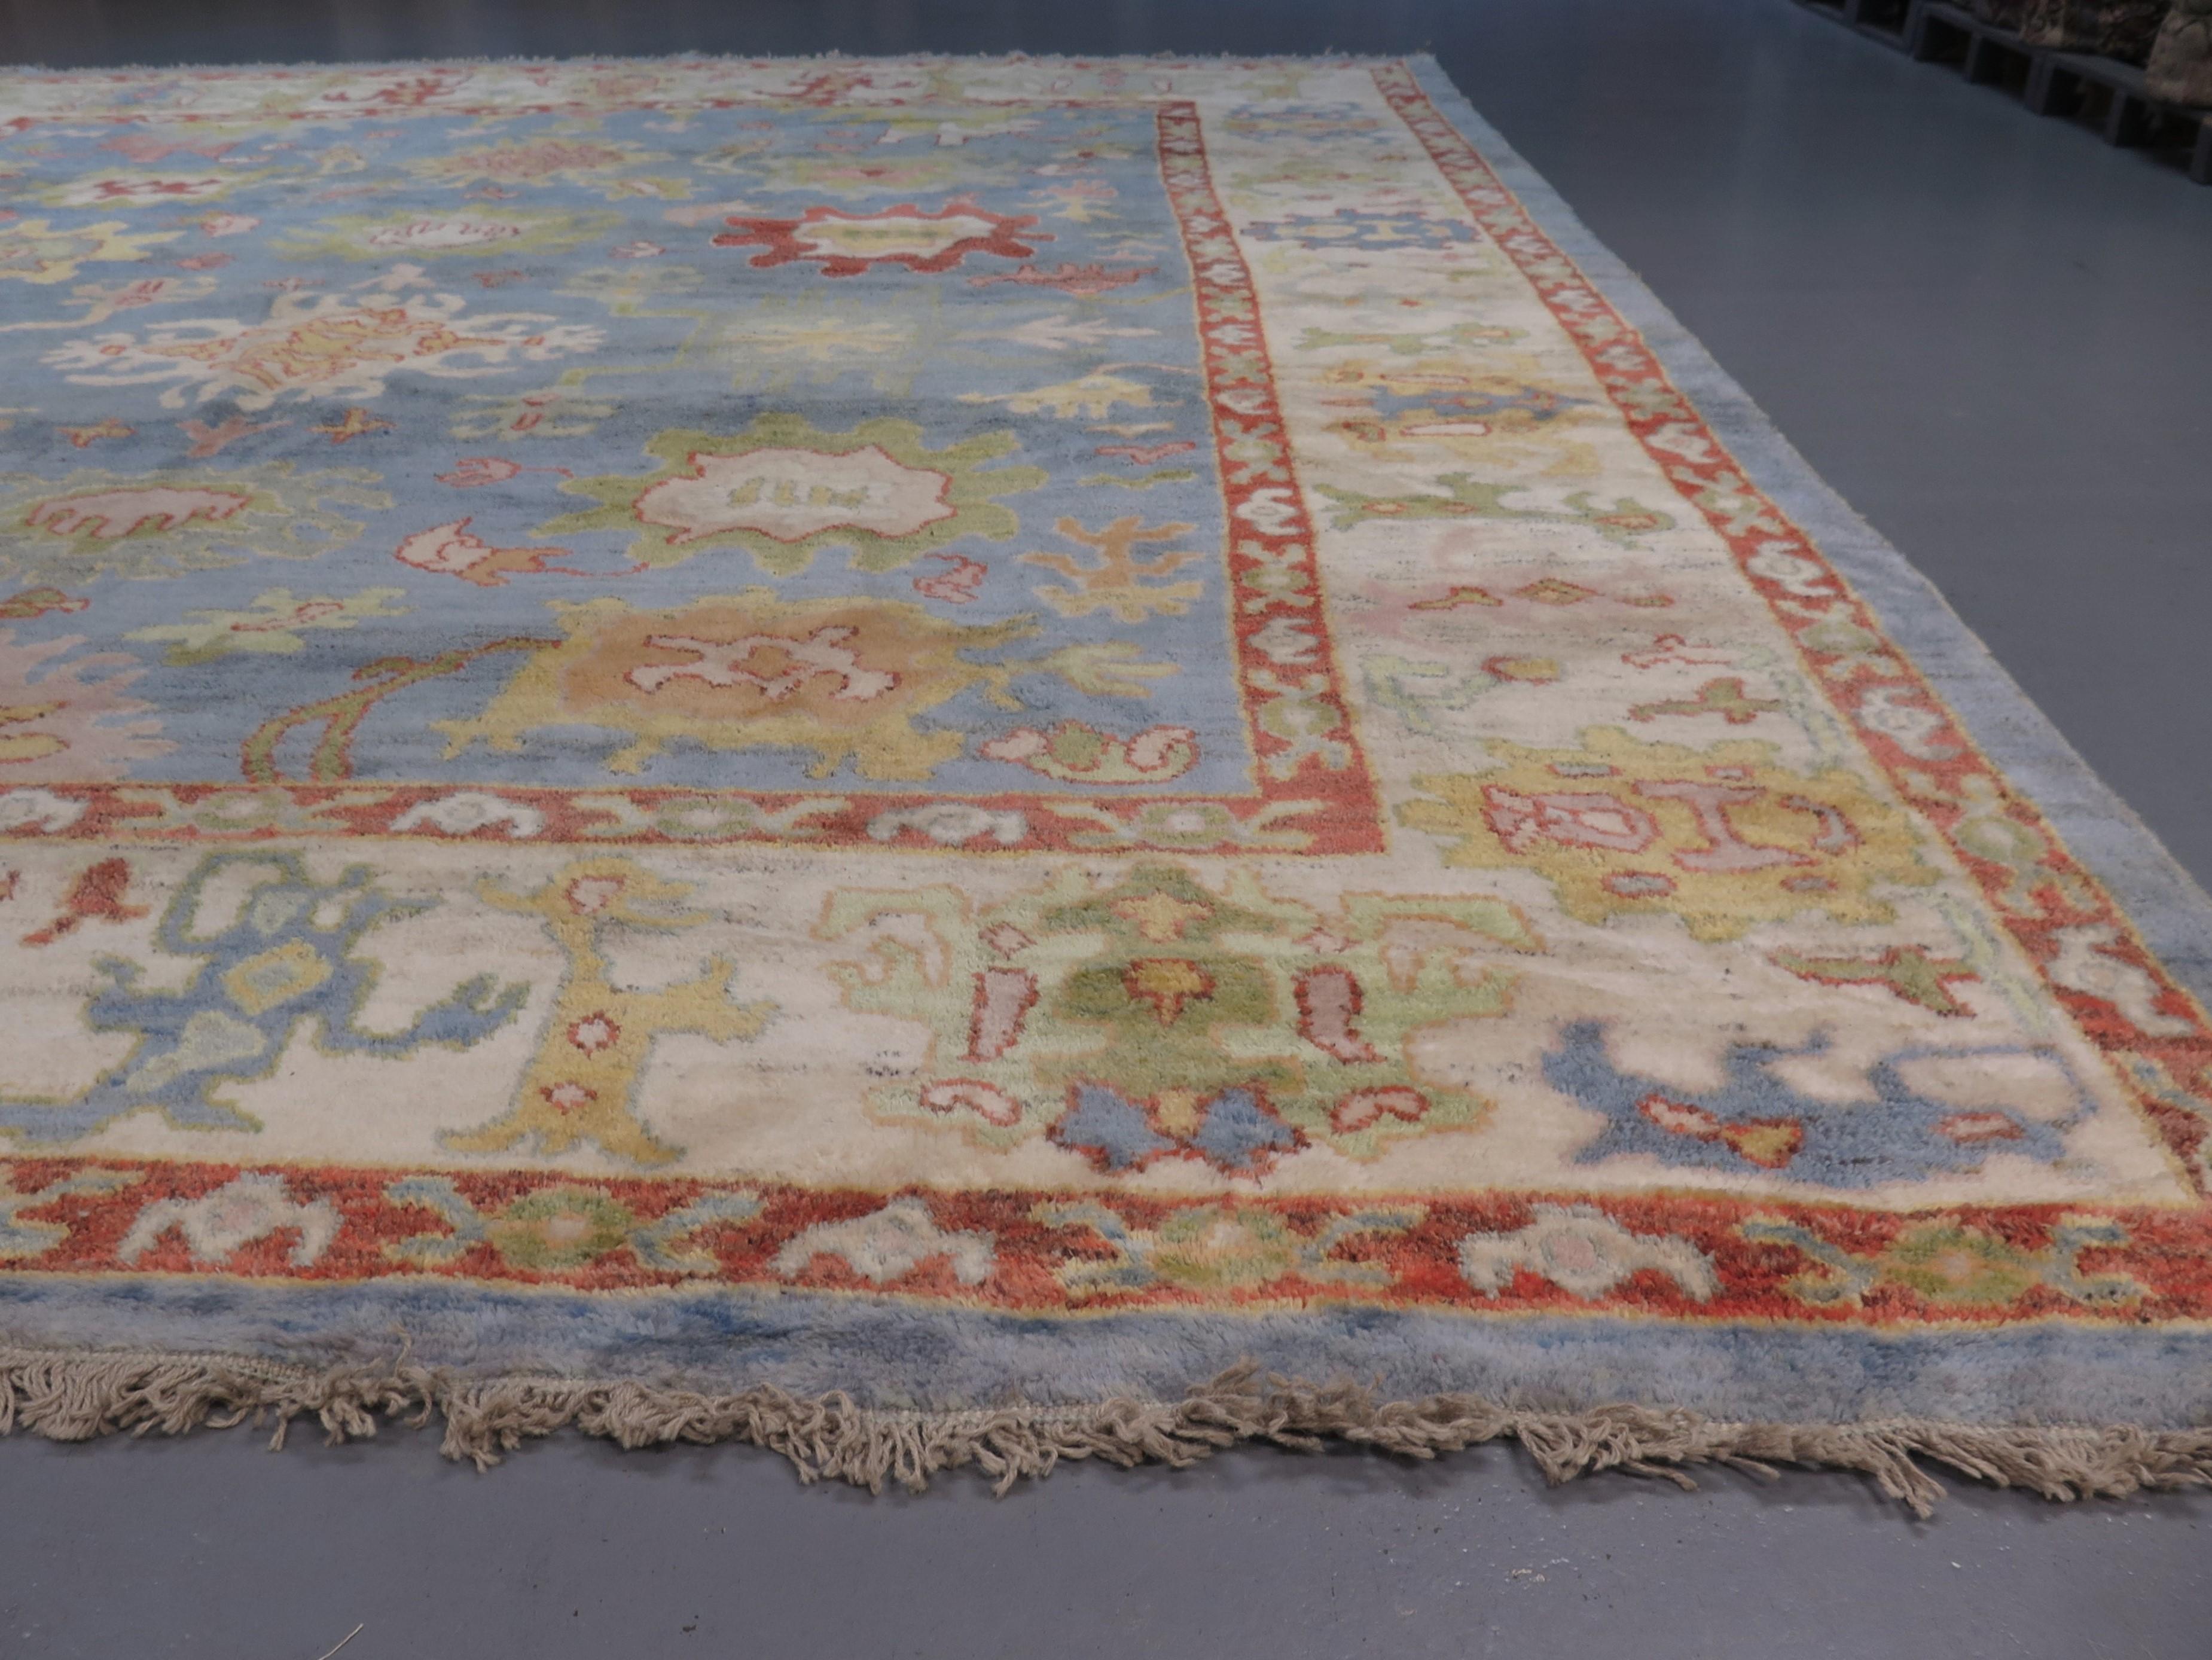 Les ateliers de tissage d'Anatolie occidentale, où les tapis Oushak tels que celui-ci ont été fabriqués à l'origine, ont une riche histoire, qui remonte au moins au début de l'ère moderne - comme l'a écrit l'explorateur du XIVe siècle Marco Polo,